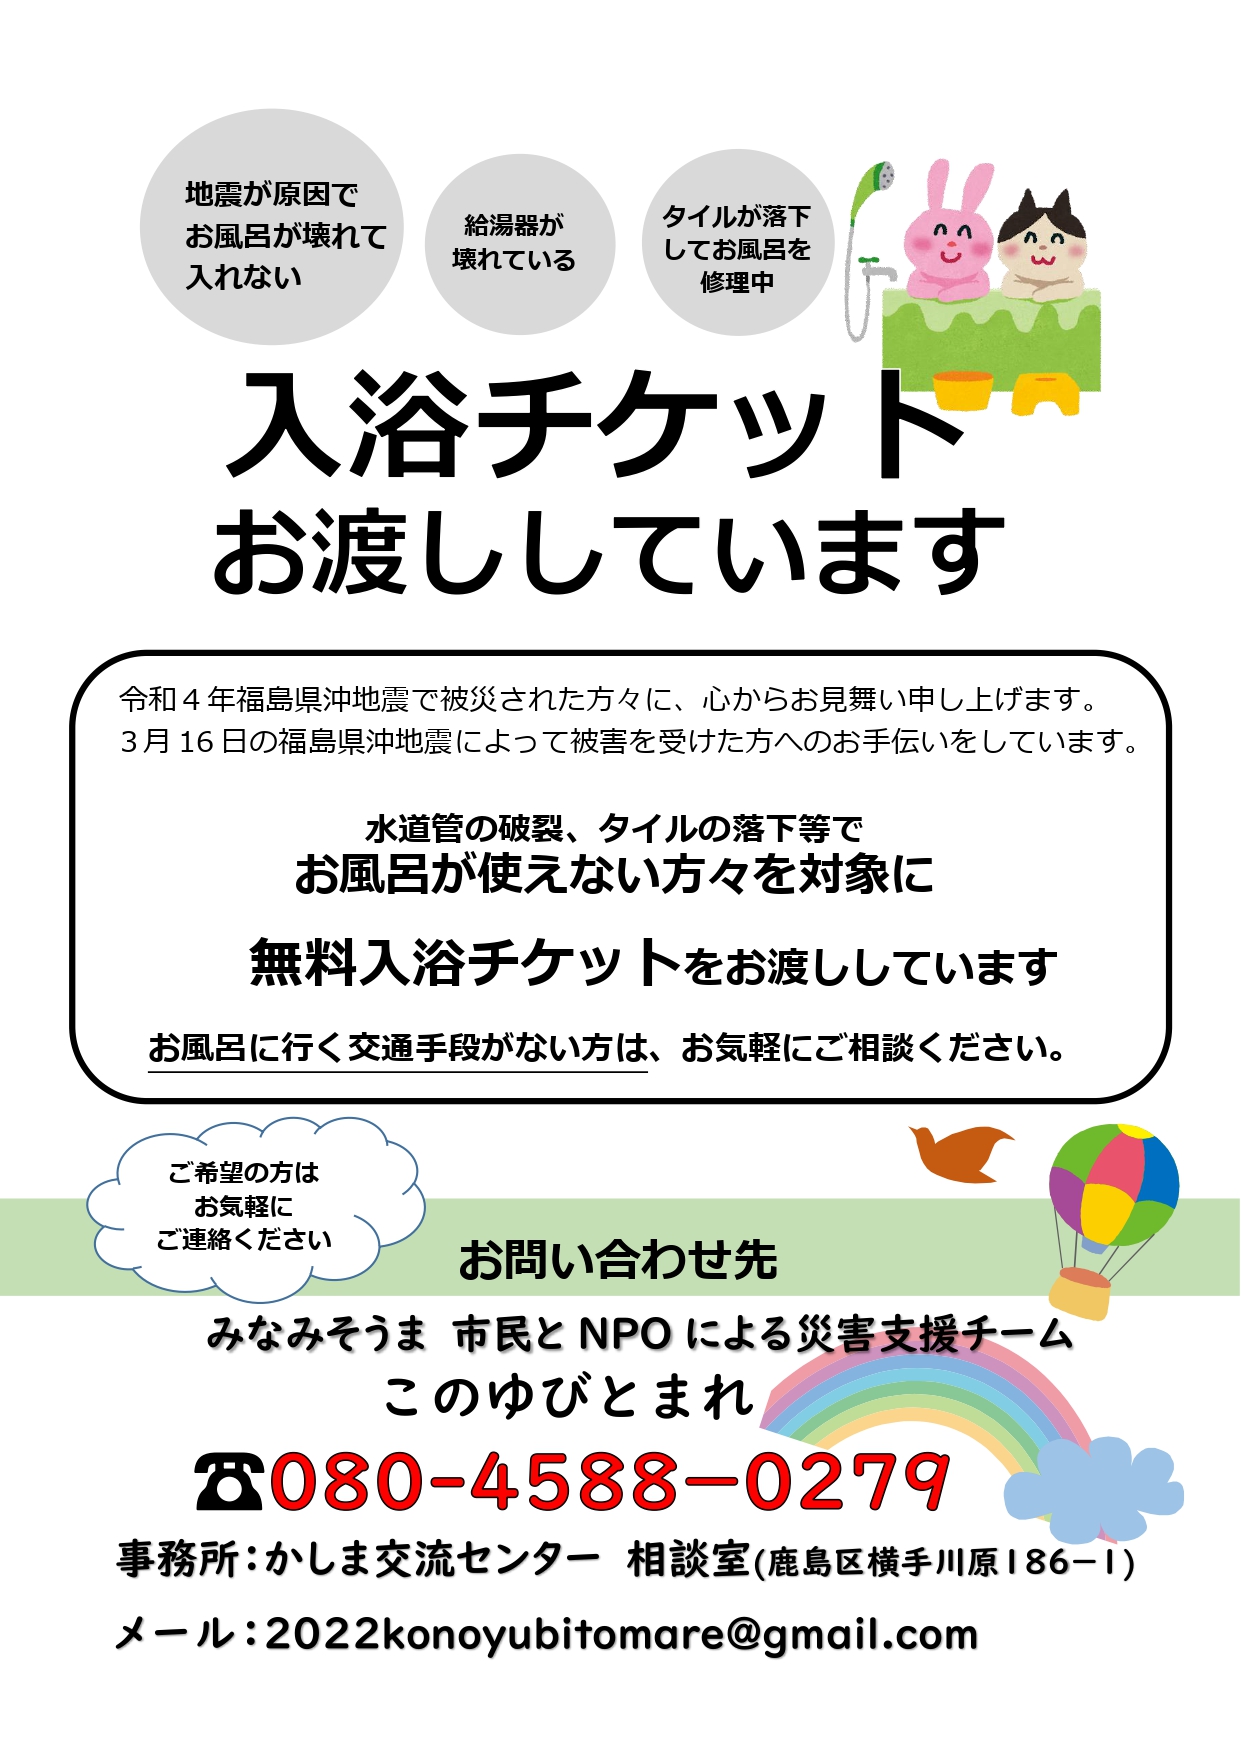 福島県沖地震でお風呂が使えない方々へ入浴チケット支援のお知らせ